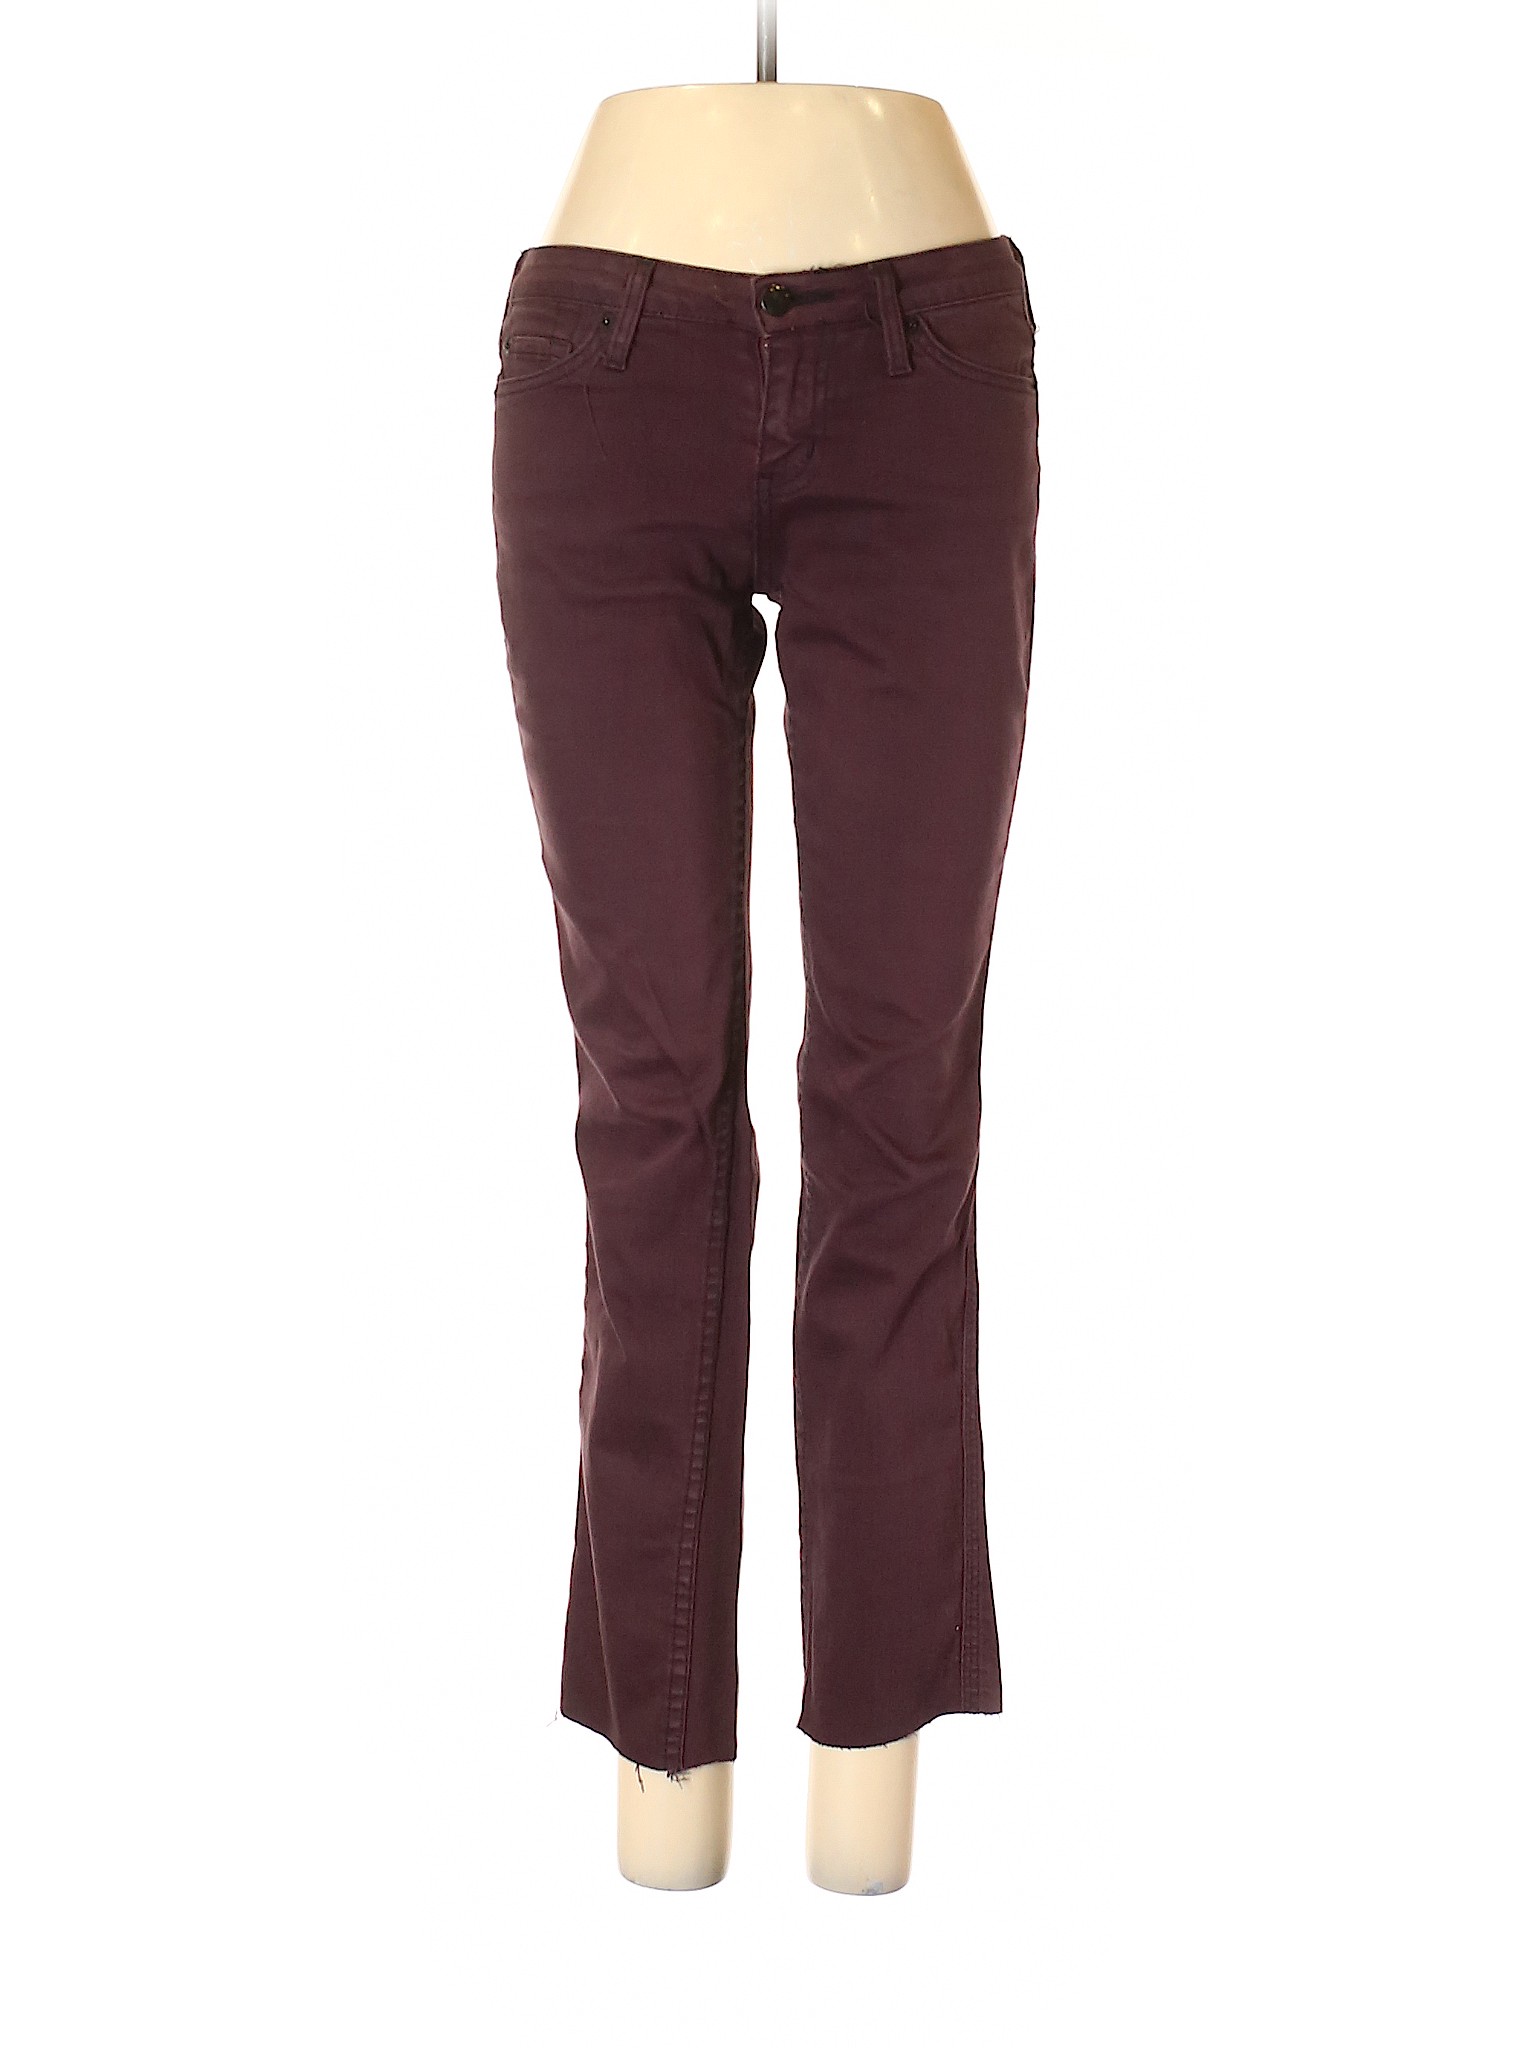 Assorted Brands Women Purple Jeans 27W | eBay